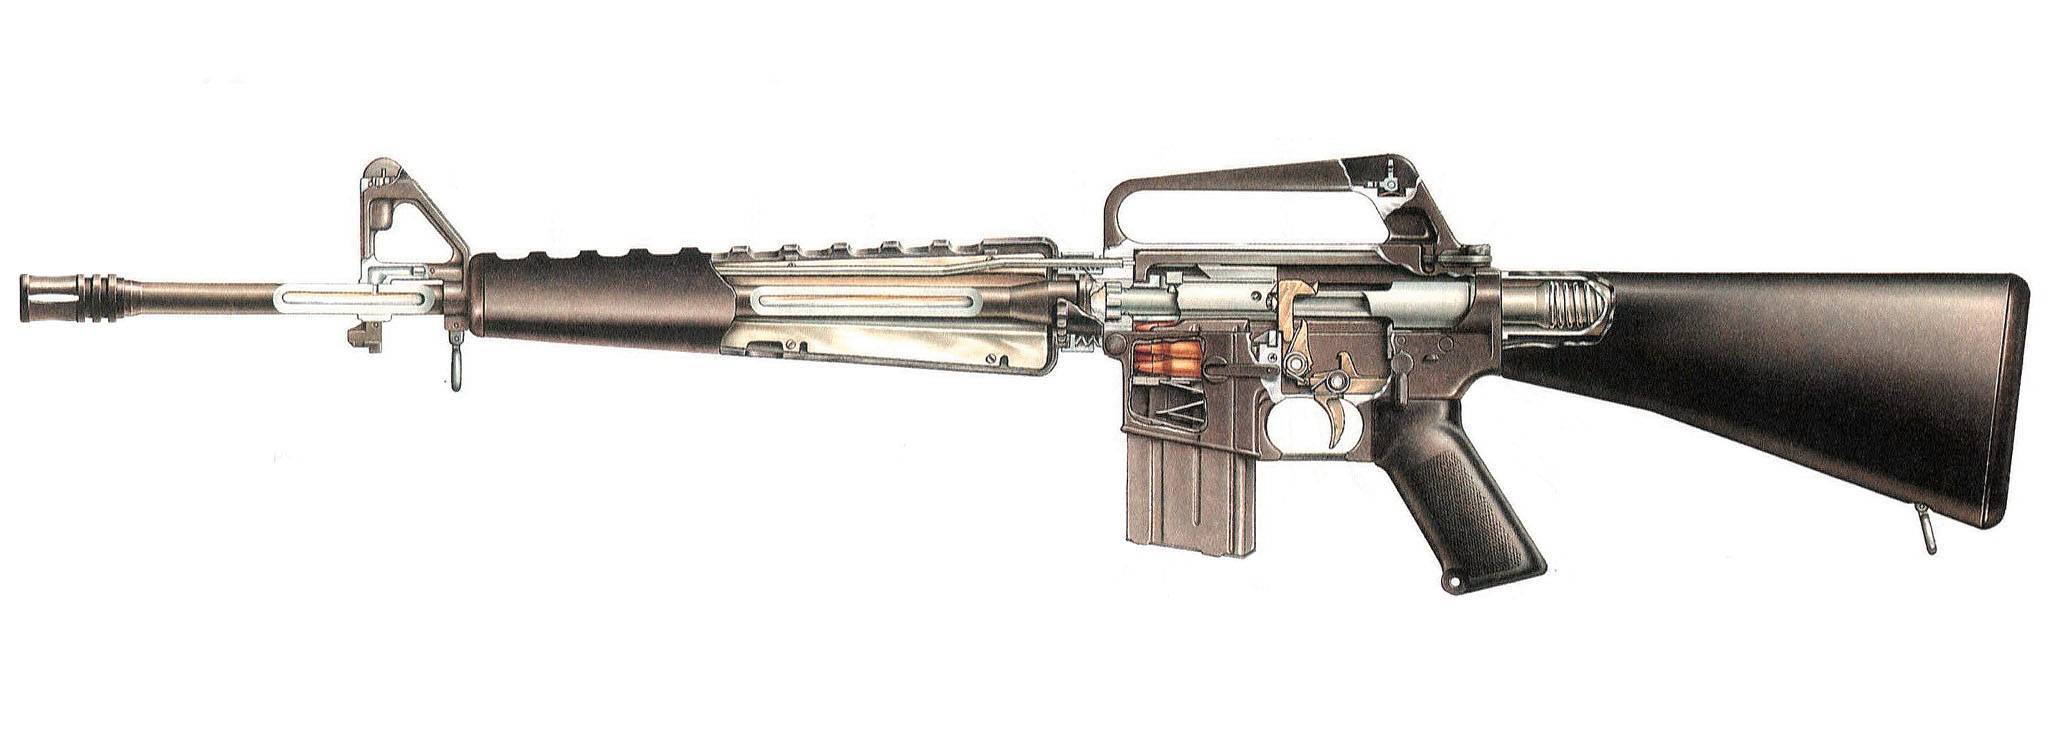 Автомат / штурмовая винтовка enfield sa-80: l85a1 l85a2 l85a3 (великобритания)